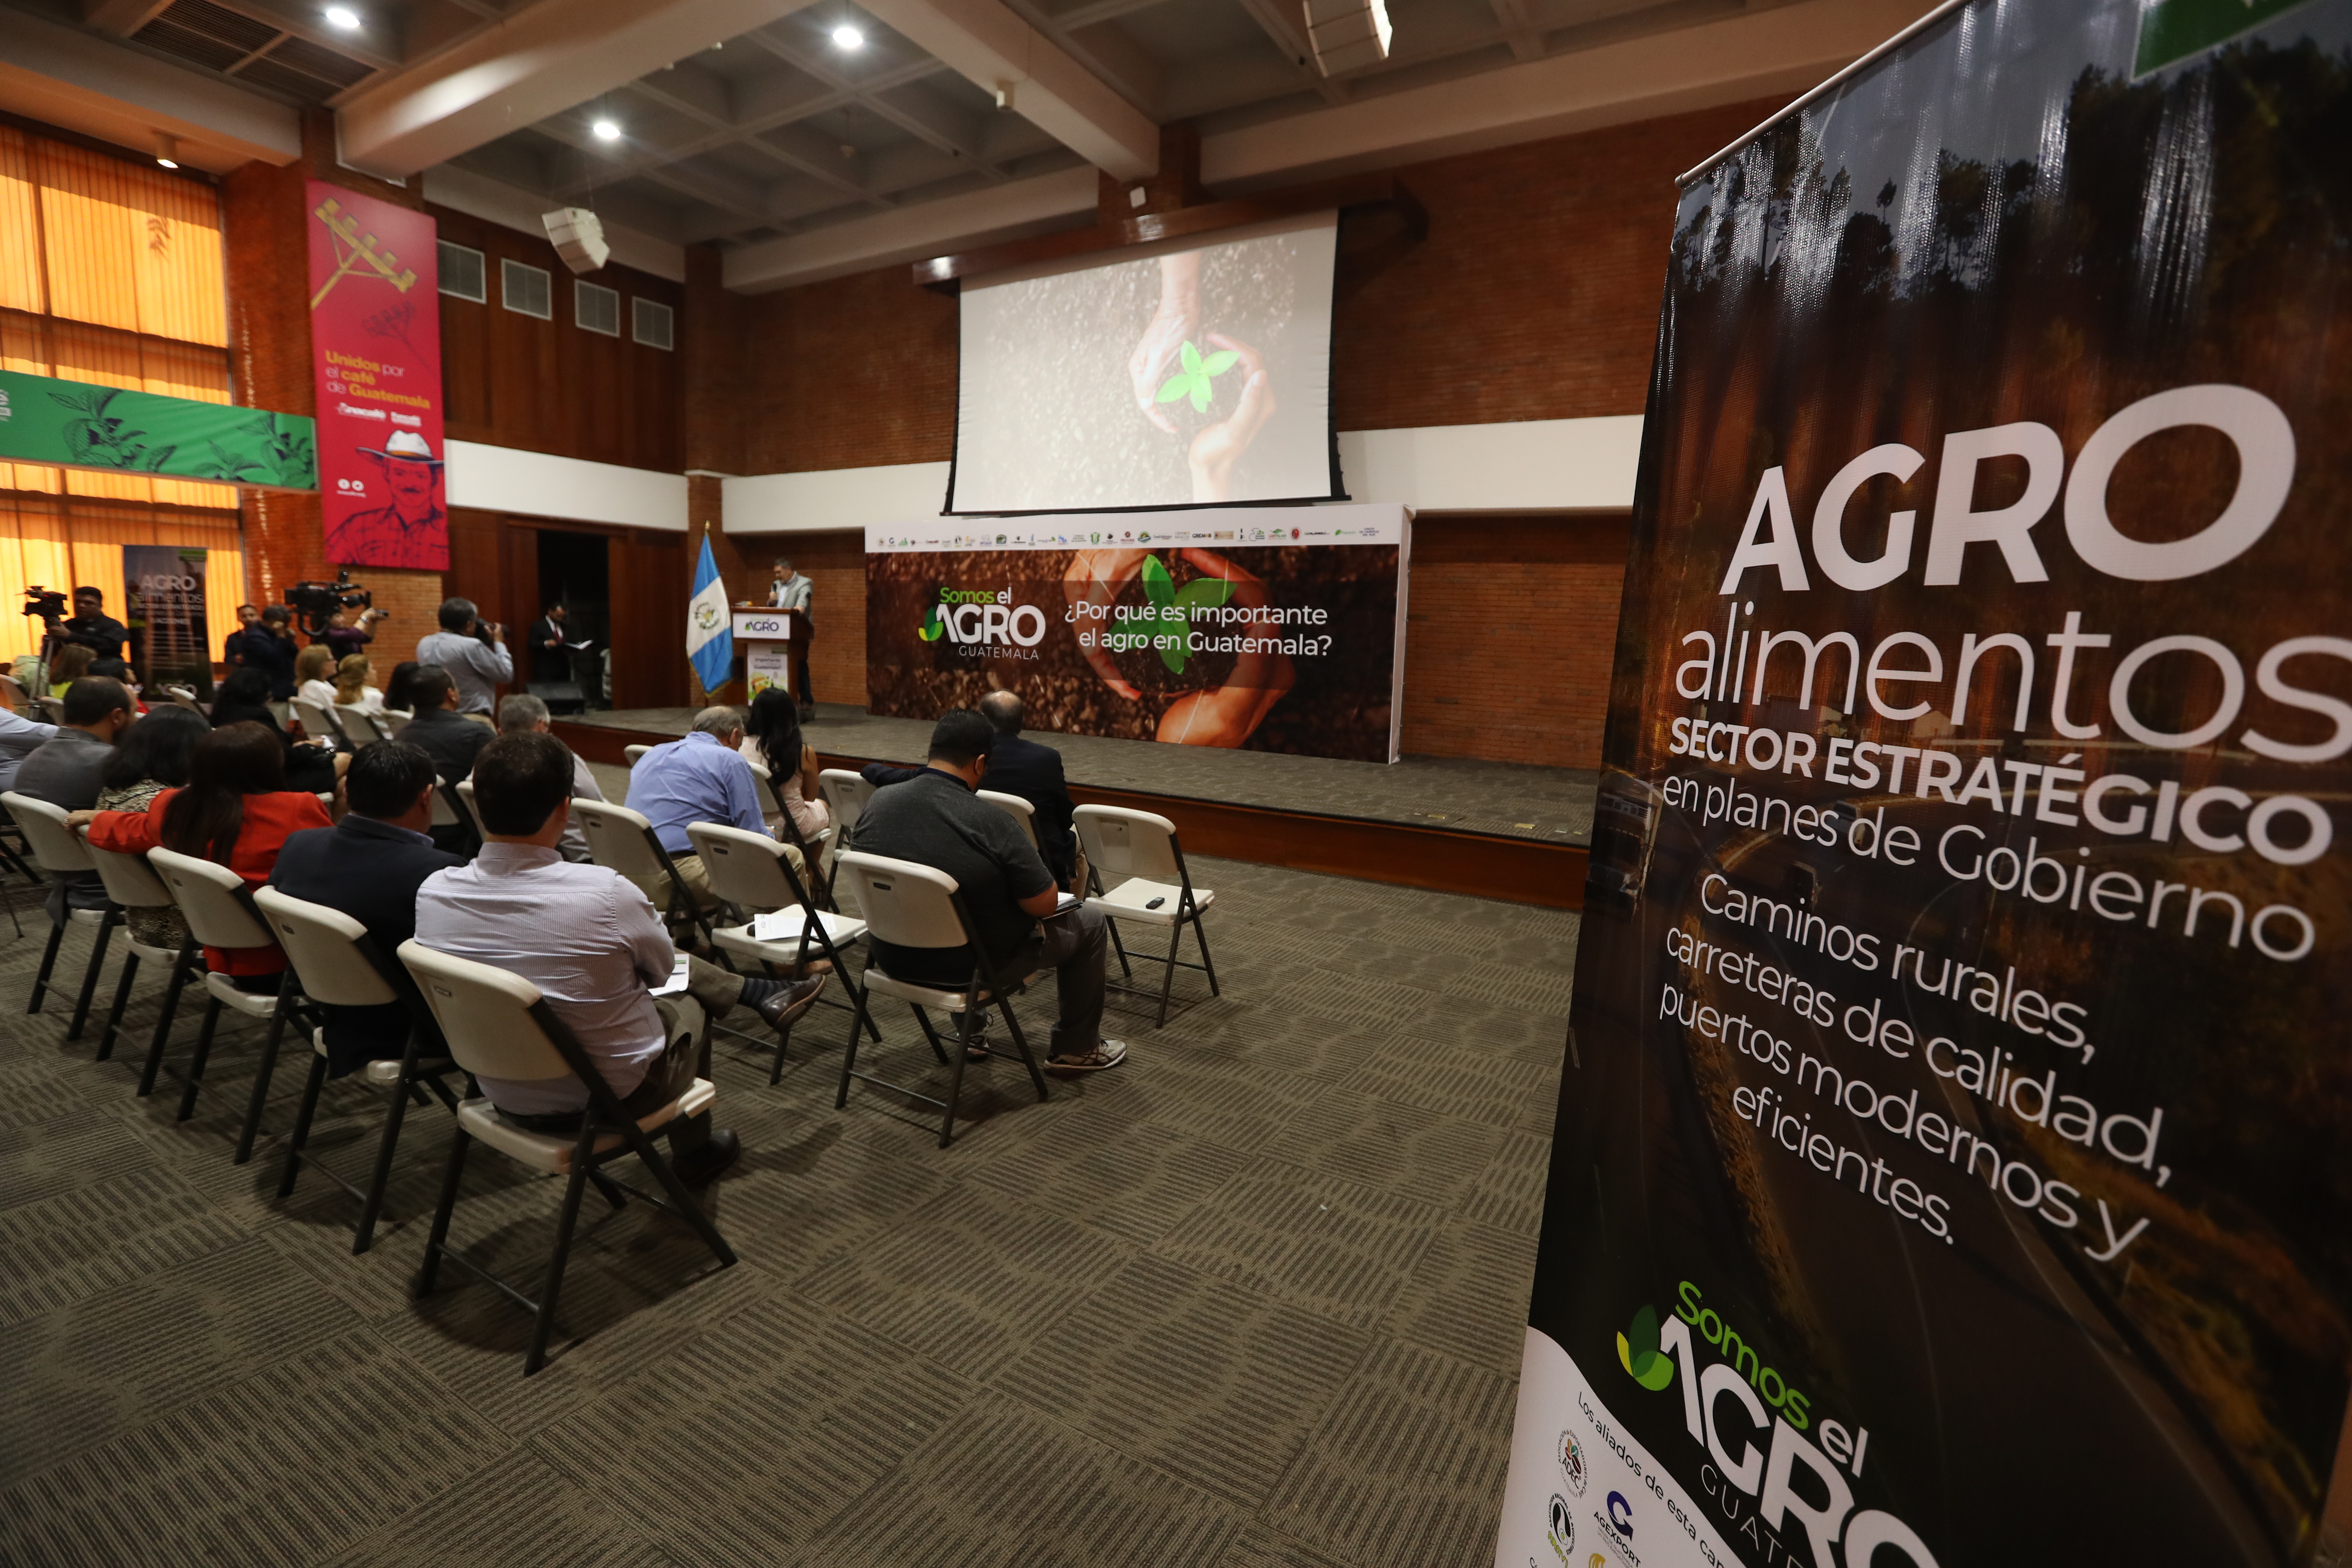 Representantes de 30 organizaciones y gremiales presentaron la campaña "Somos el Agro Guatemala" de cara a las elecciones generales de junio próximo. El evento se realizó en la sede de Anacafé. (Foto Prensa Libre: Esbín García) 